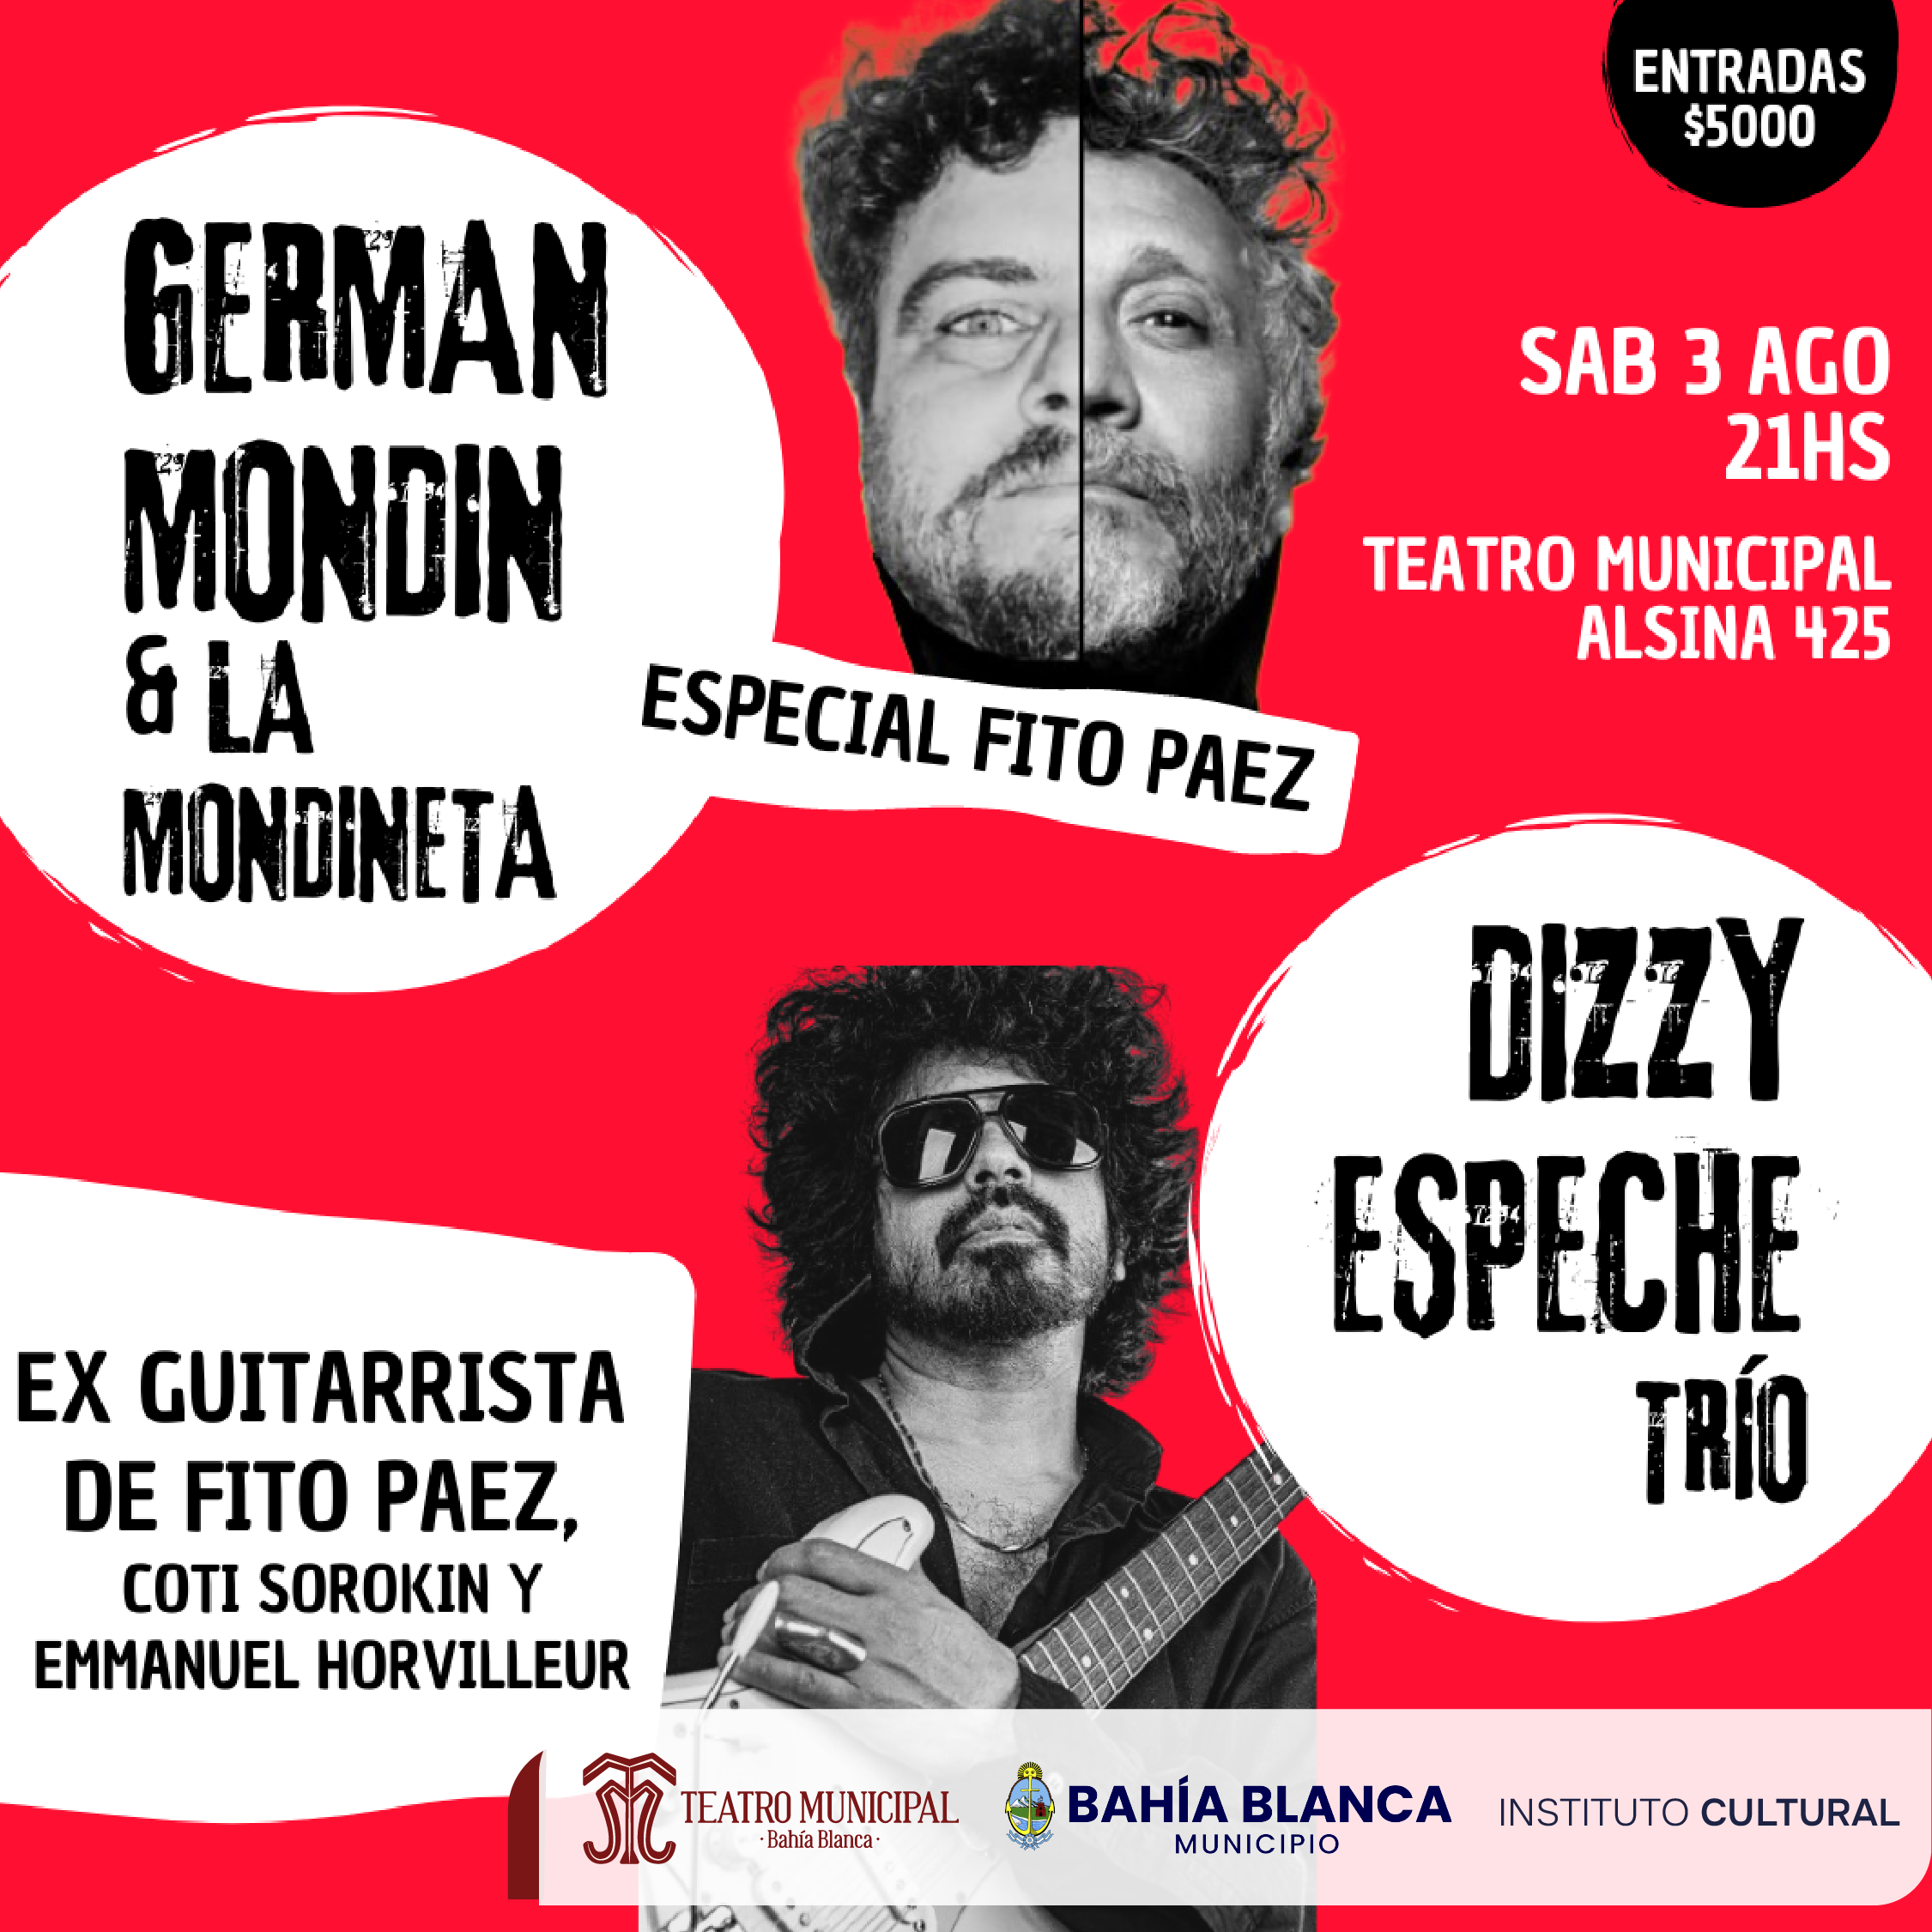 GERMAN MONDIN & LA MONDINETA DIZZY ESPECHE TRIO